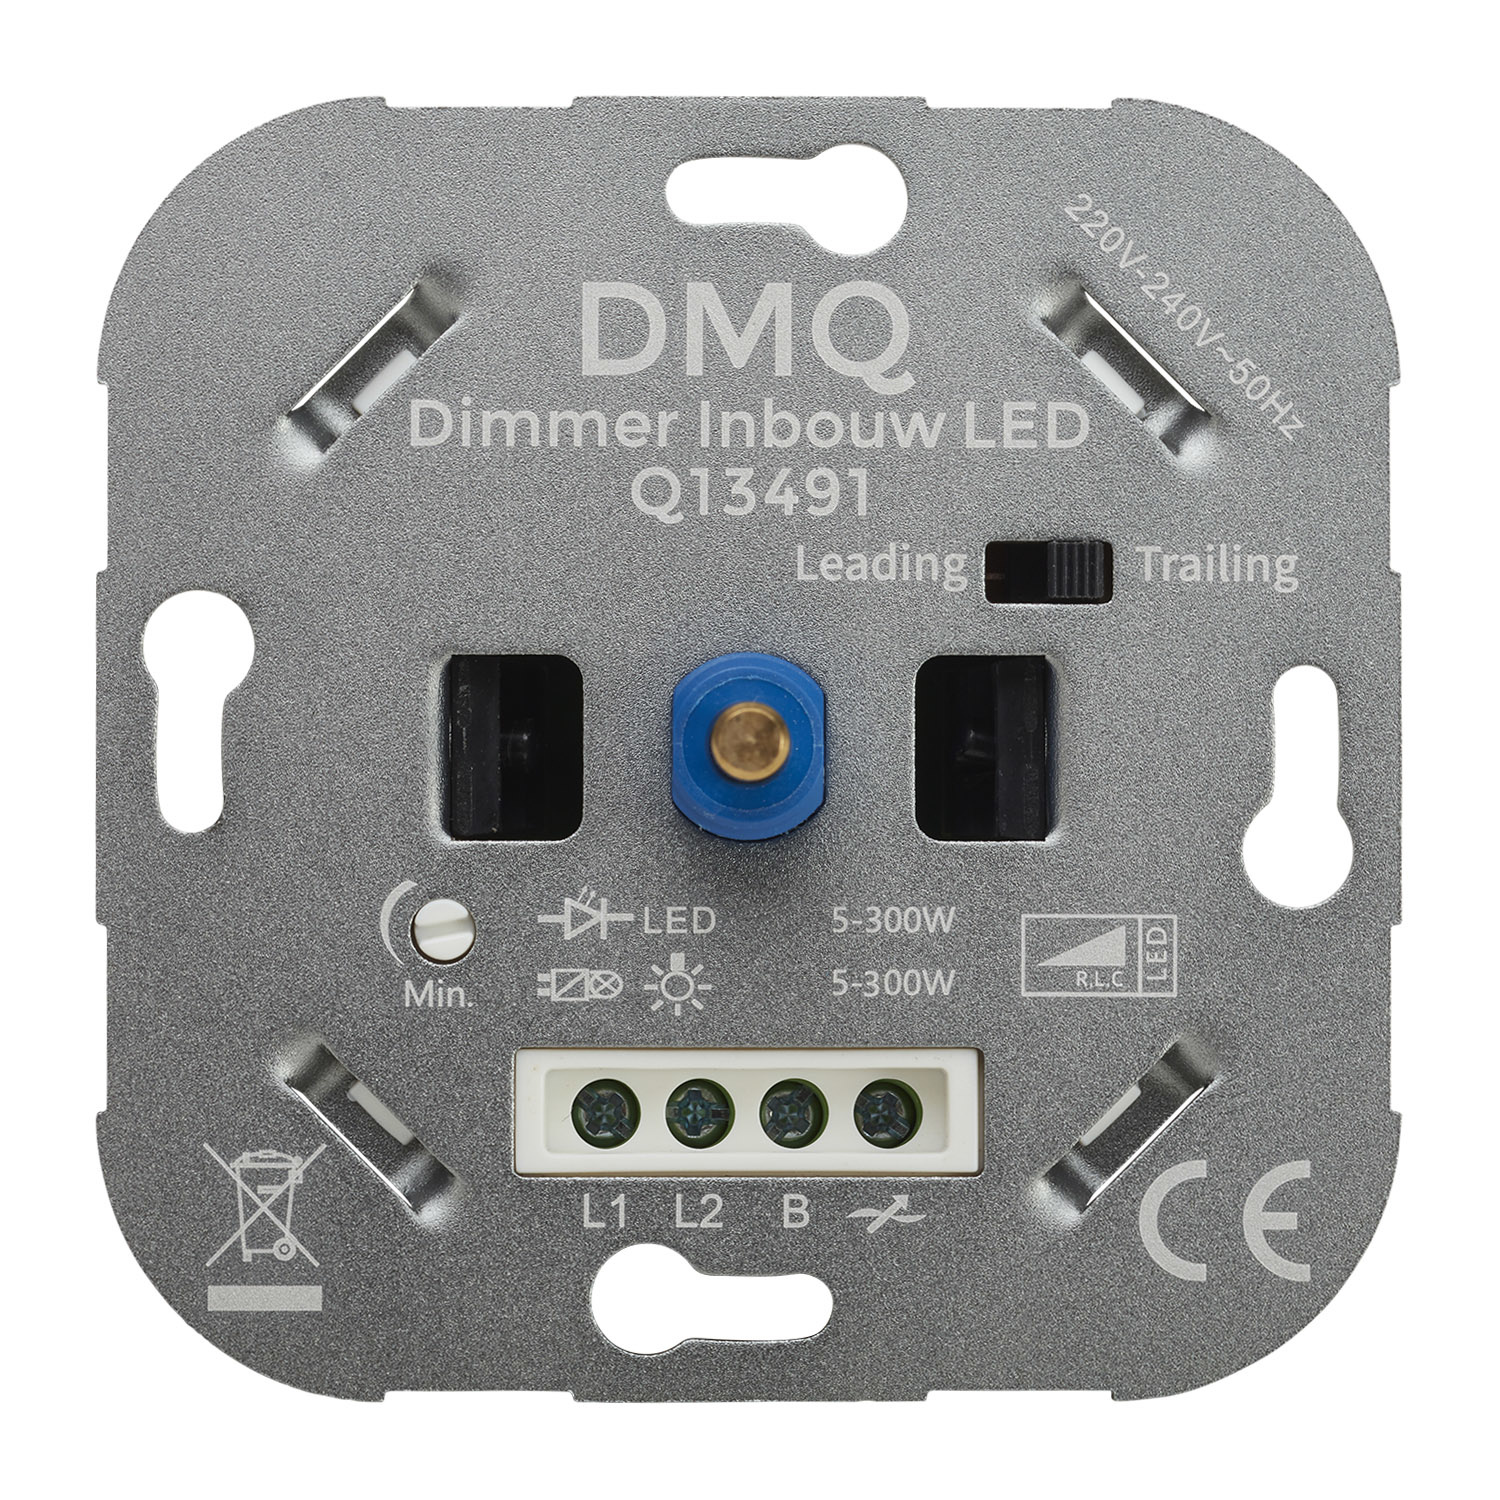 Omzet blik tabak DMQ - LED Dimmer Inbouw Universeel - Werkt op 99% van alle LED lampen - DMQ